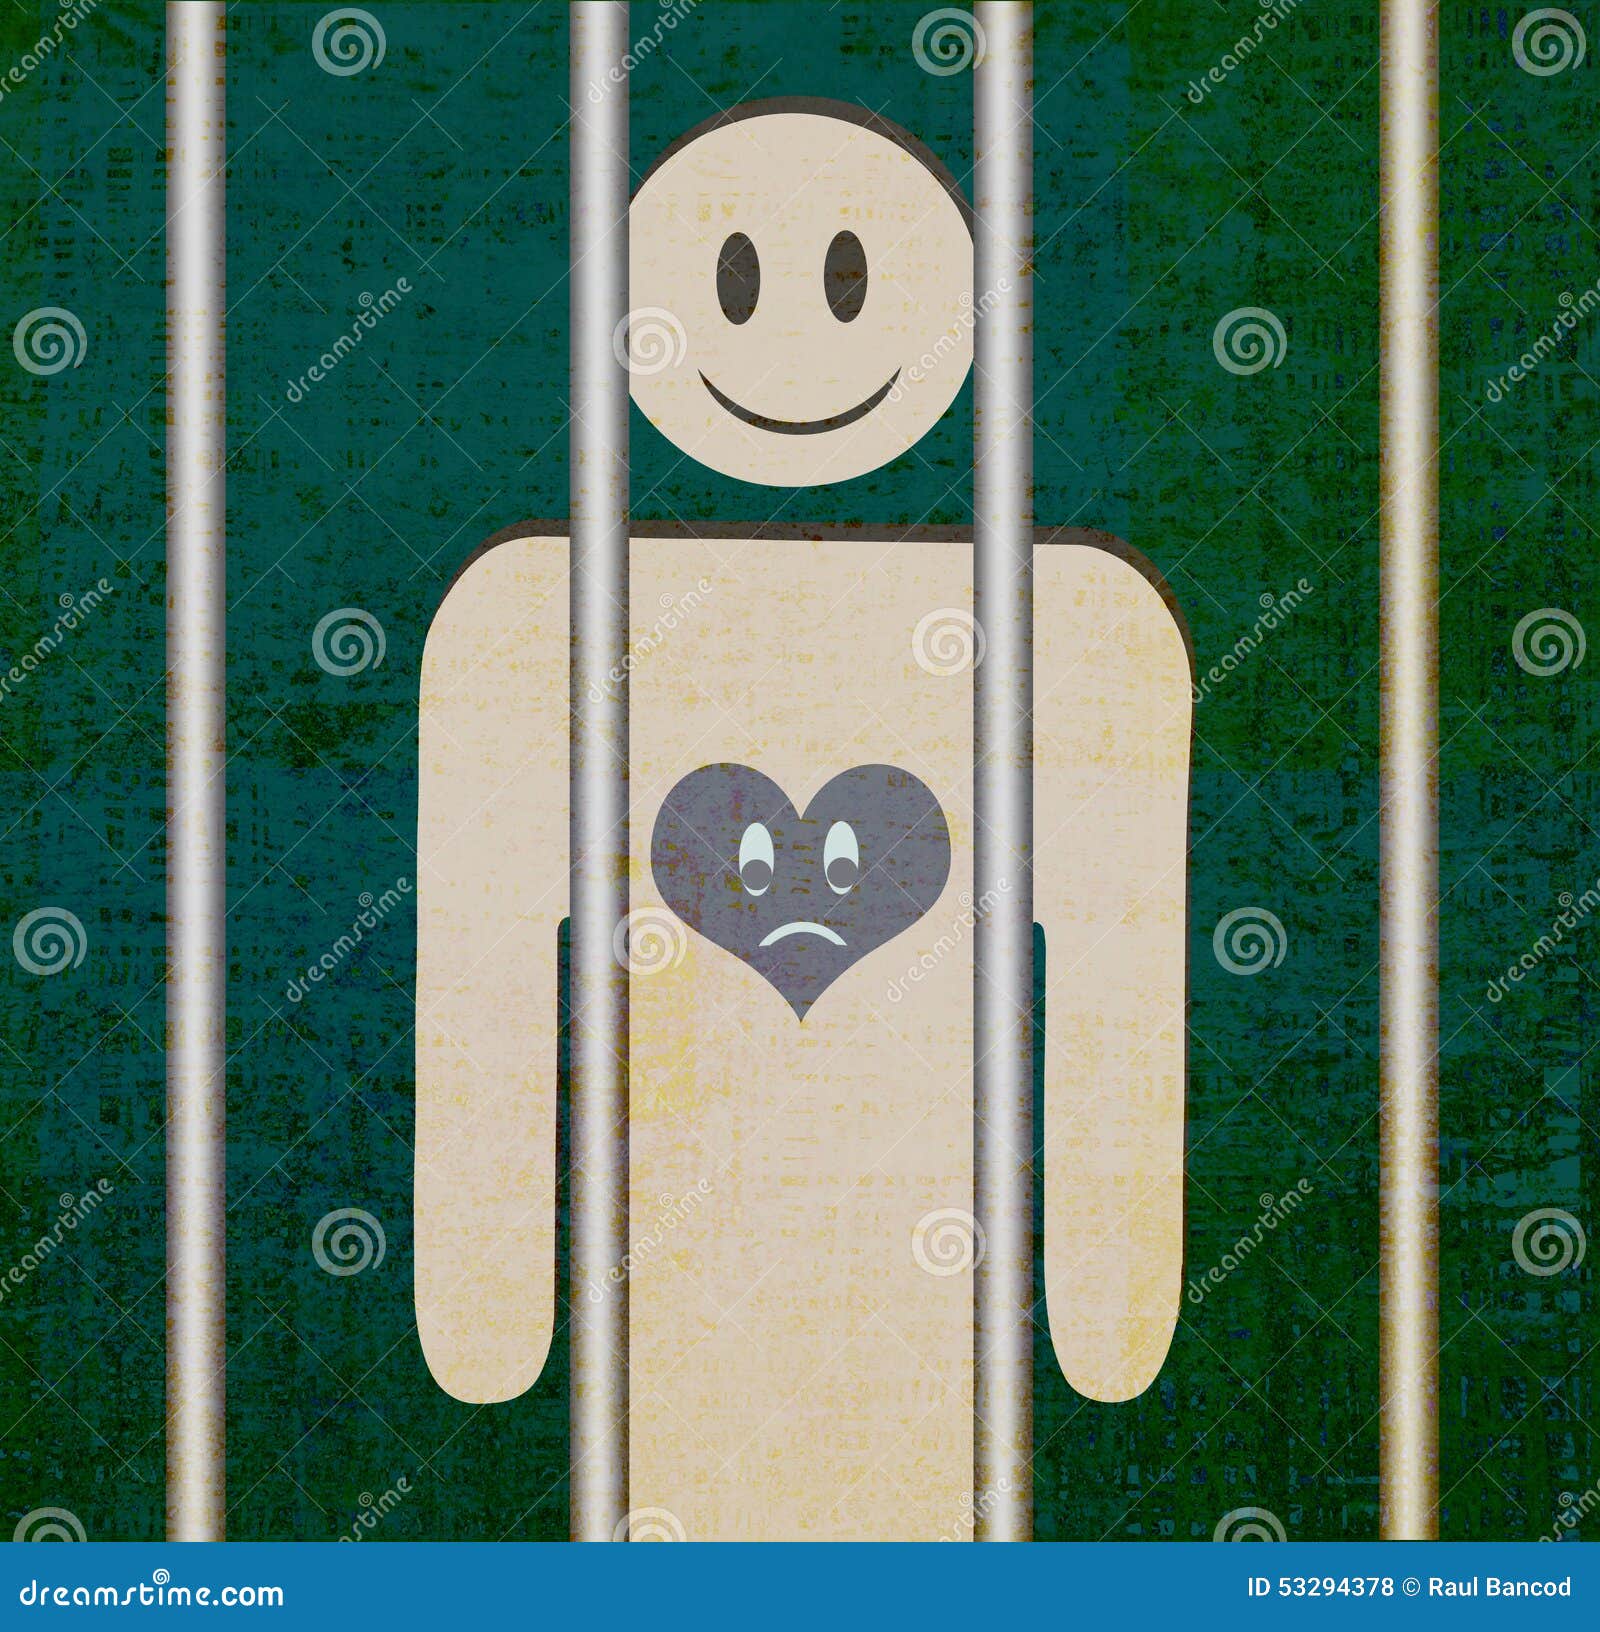 Man Prisoner To His Heart Vector Cartoon Illustration | CartoonDealer ...